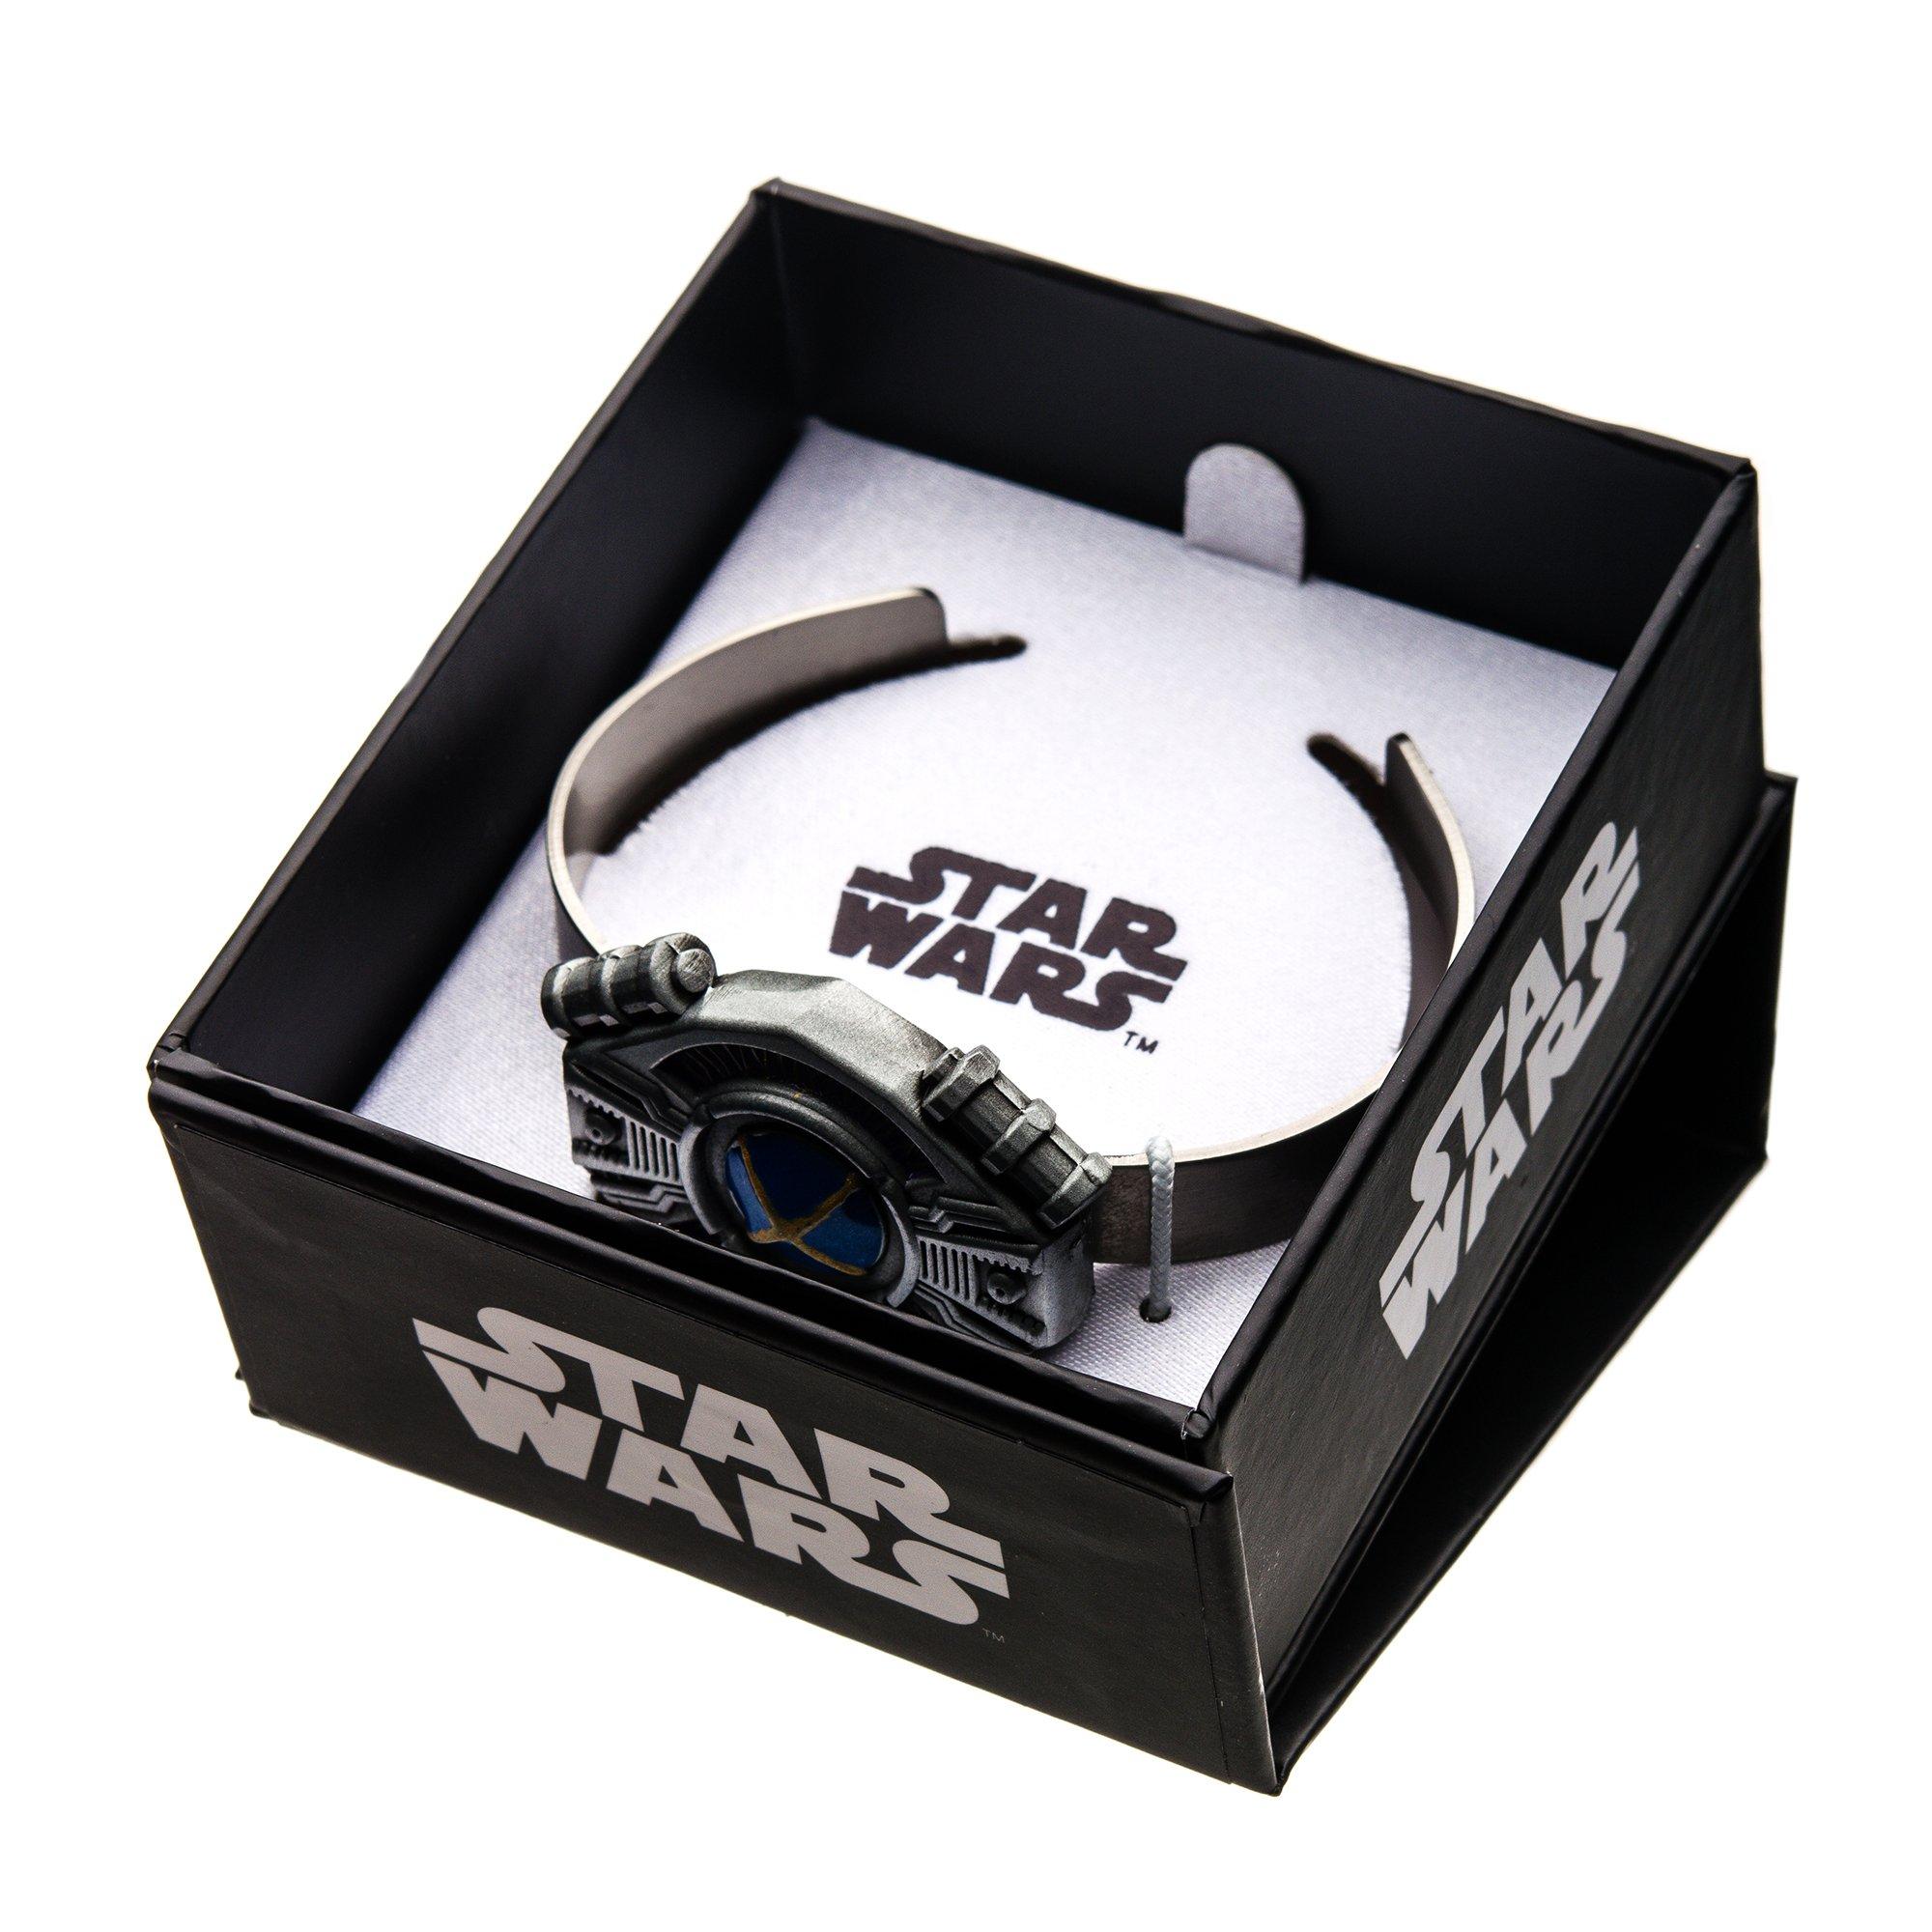 Star Wars Episode VIII: The Last Jedi Beacon Tracker Bracelet